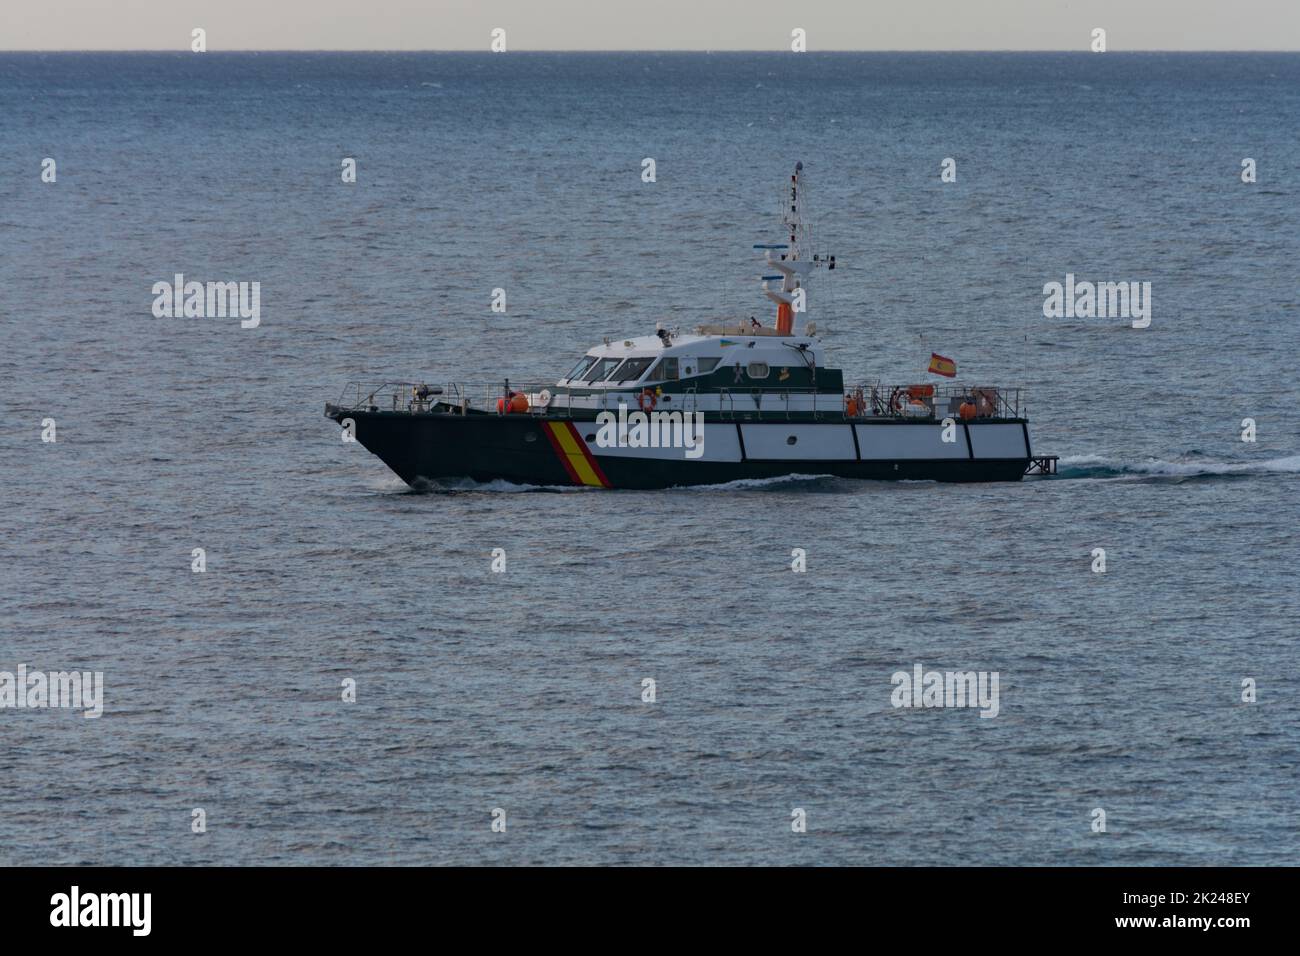 CRAN CANARIA, MELONERAS - 14 NOVEMBRE 2019: Guardia Spagnola pattuglia di nave civile al largo della costa di Cran Canaria, Meloneras, Spagna. Guardia costiera Foto Stock